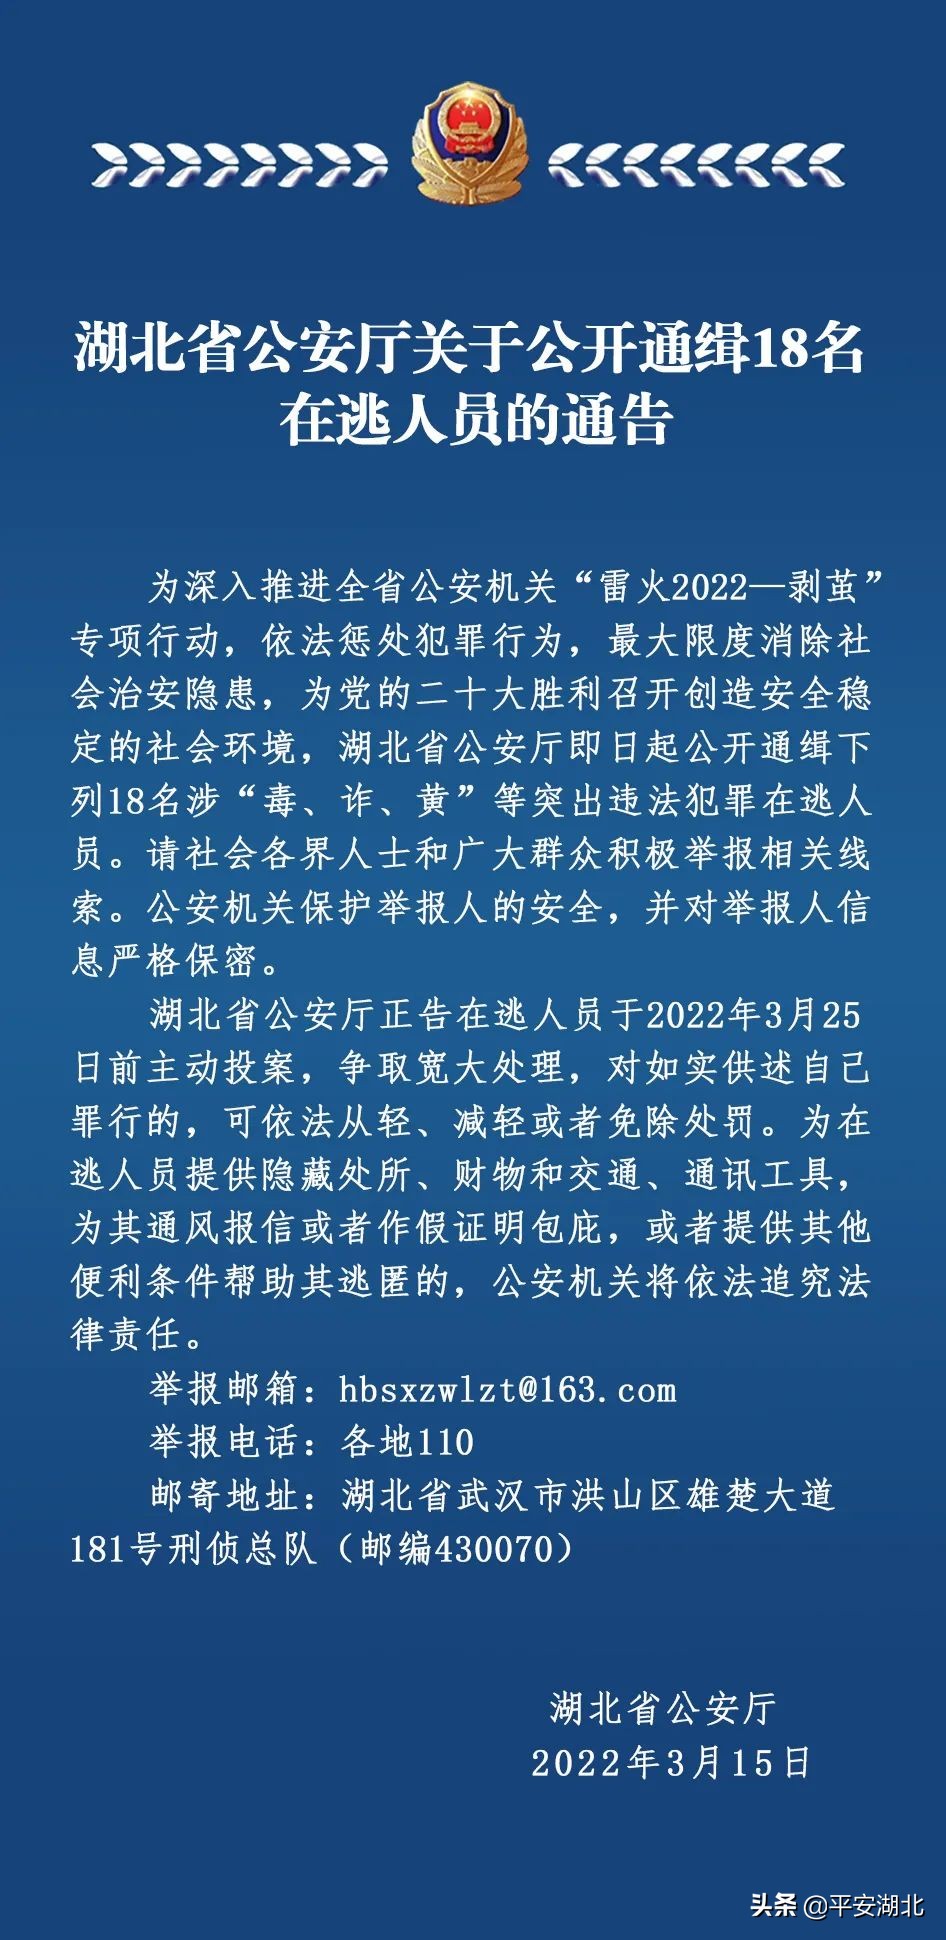 湖北省公安厅关于公开通缉18名在逃人员